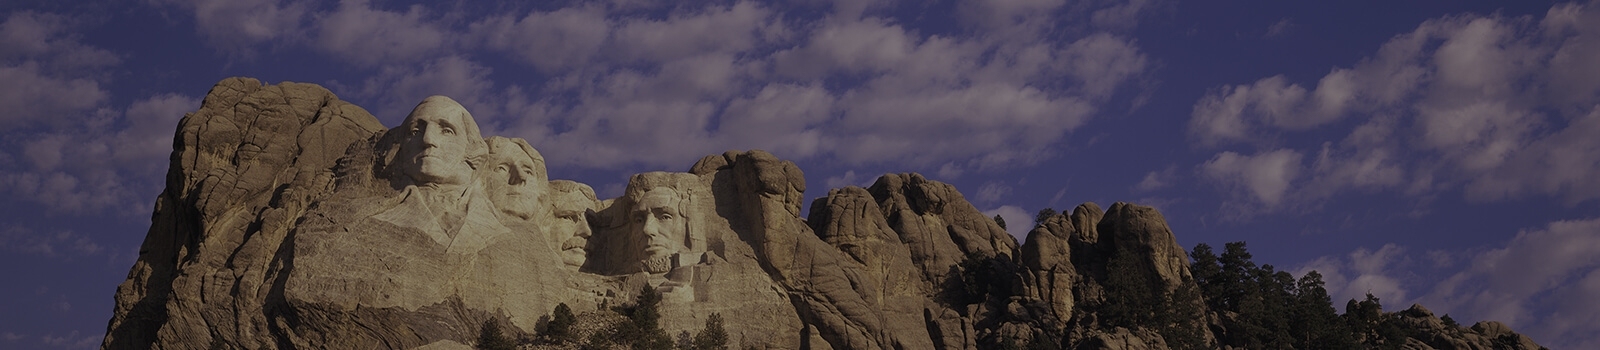 Mount Rushmore National Memorial 